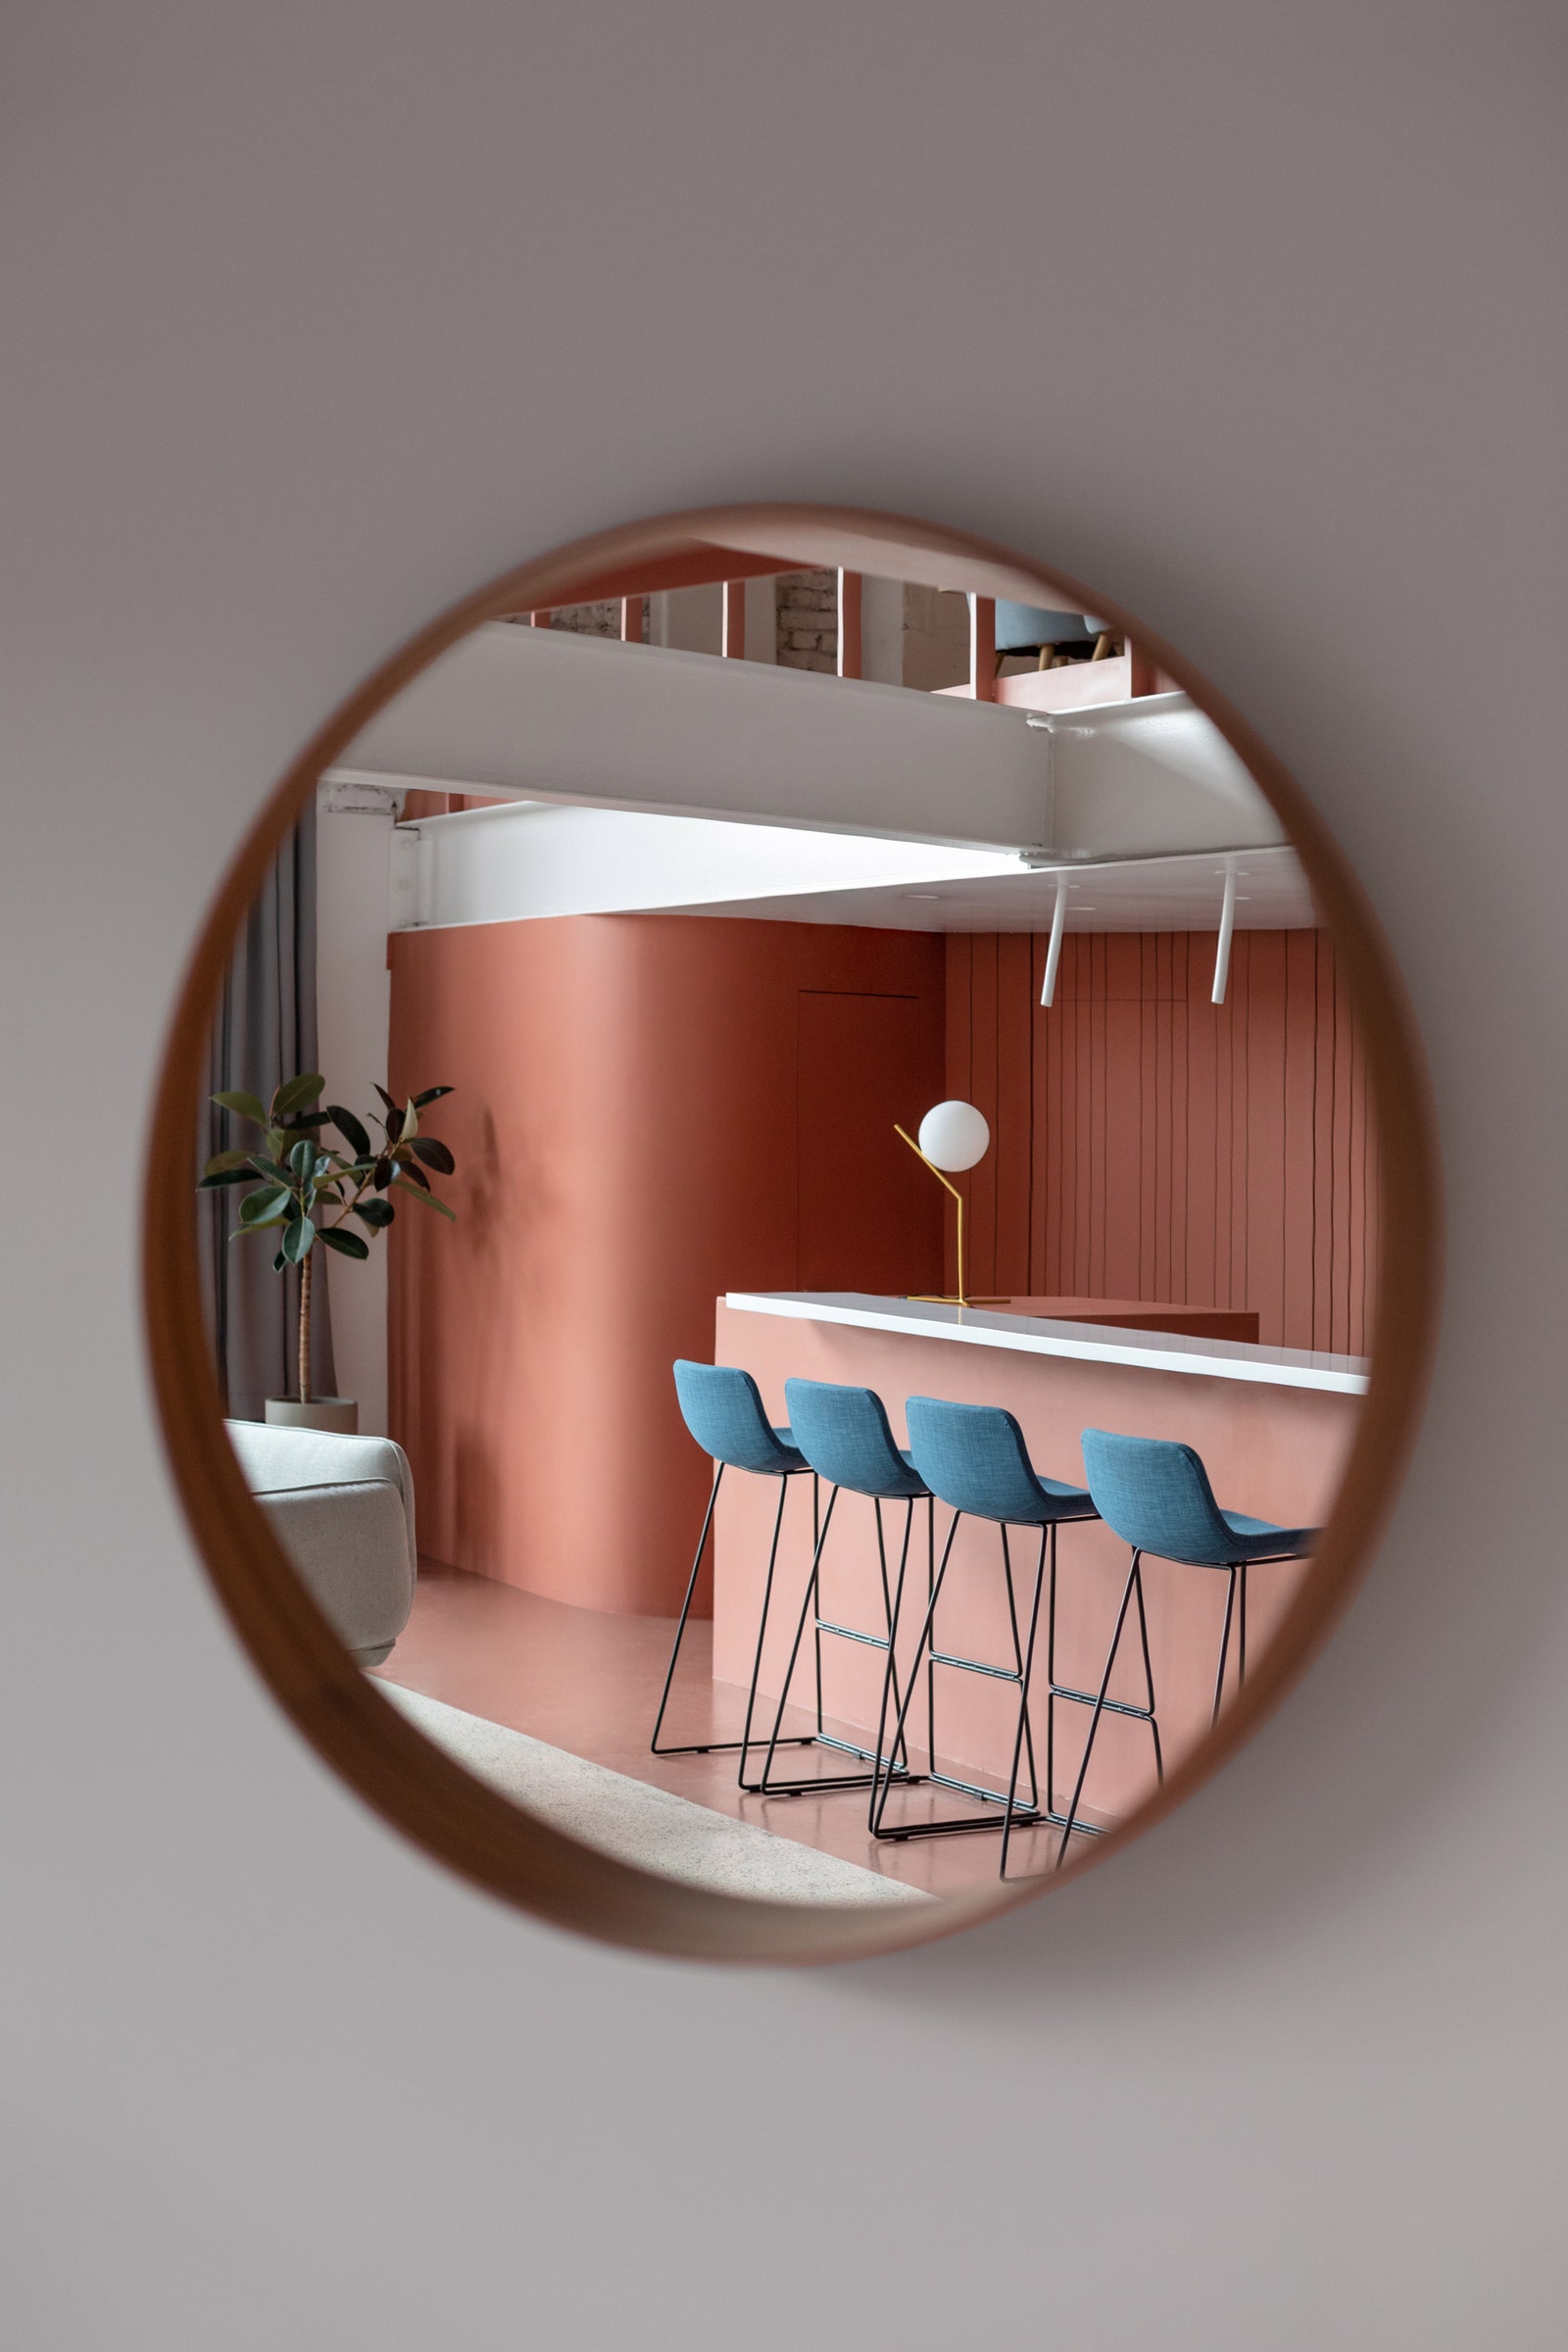 Дизайн интерьера лофта “Гостиная № 9” на “Хлебозаводе”